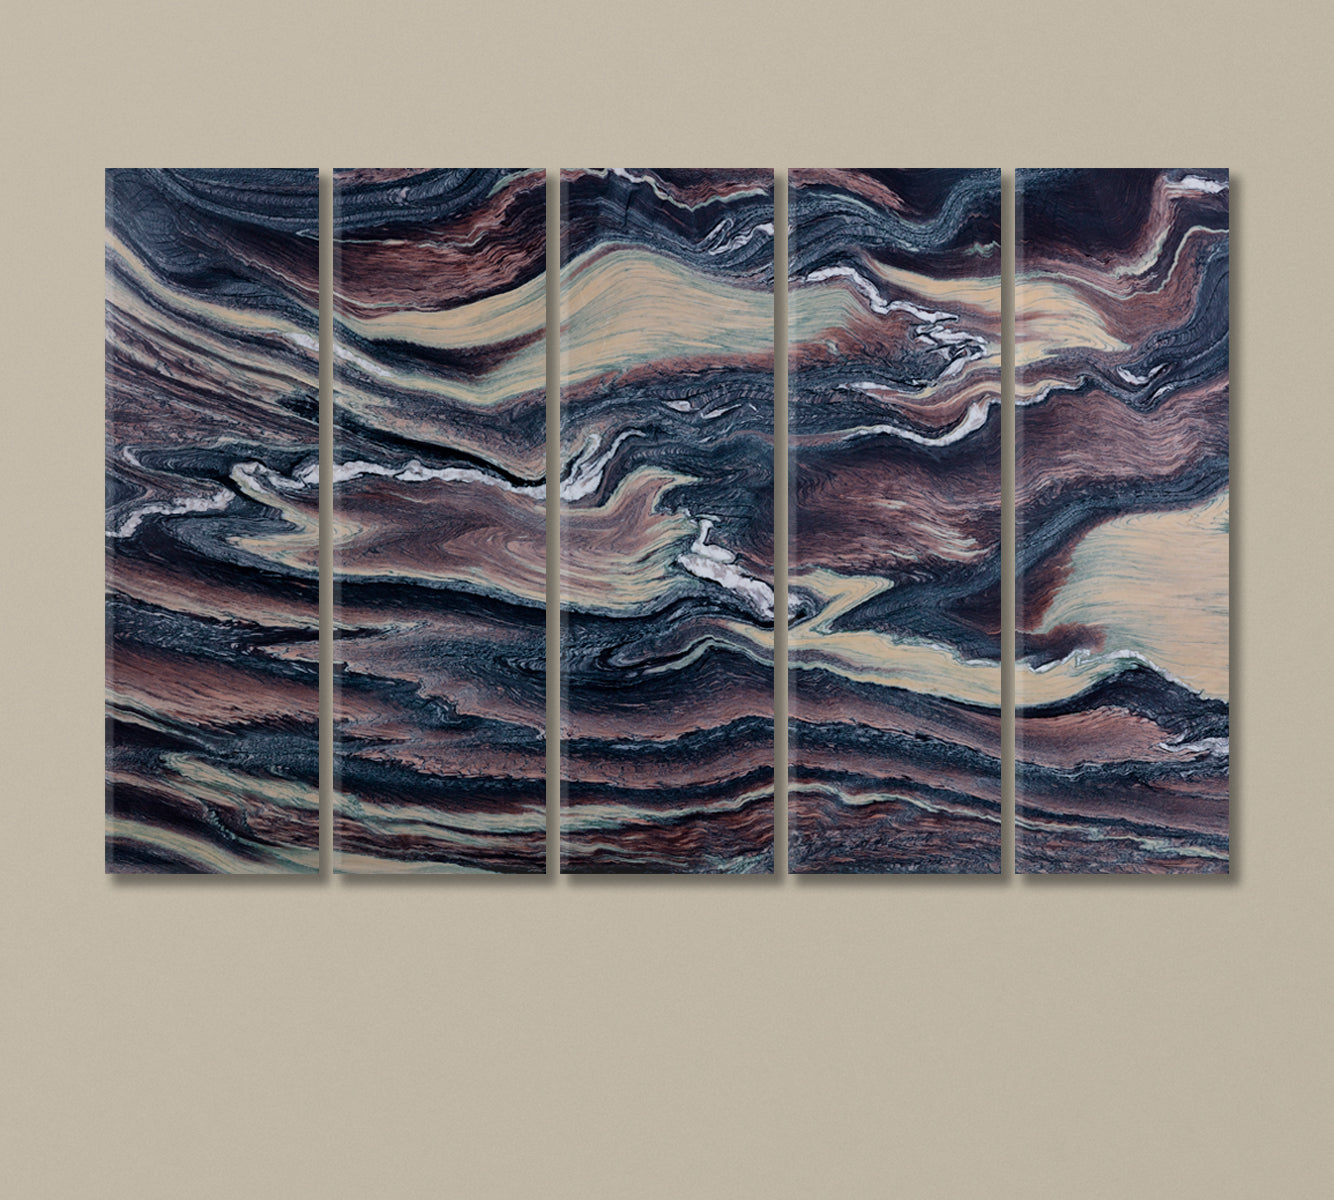 Natural Quartzite Canvas Print-Canvas Print-CetArt-5 Panels-36x24 inches-CetArt